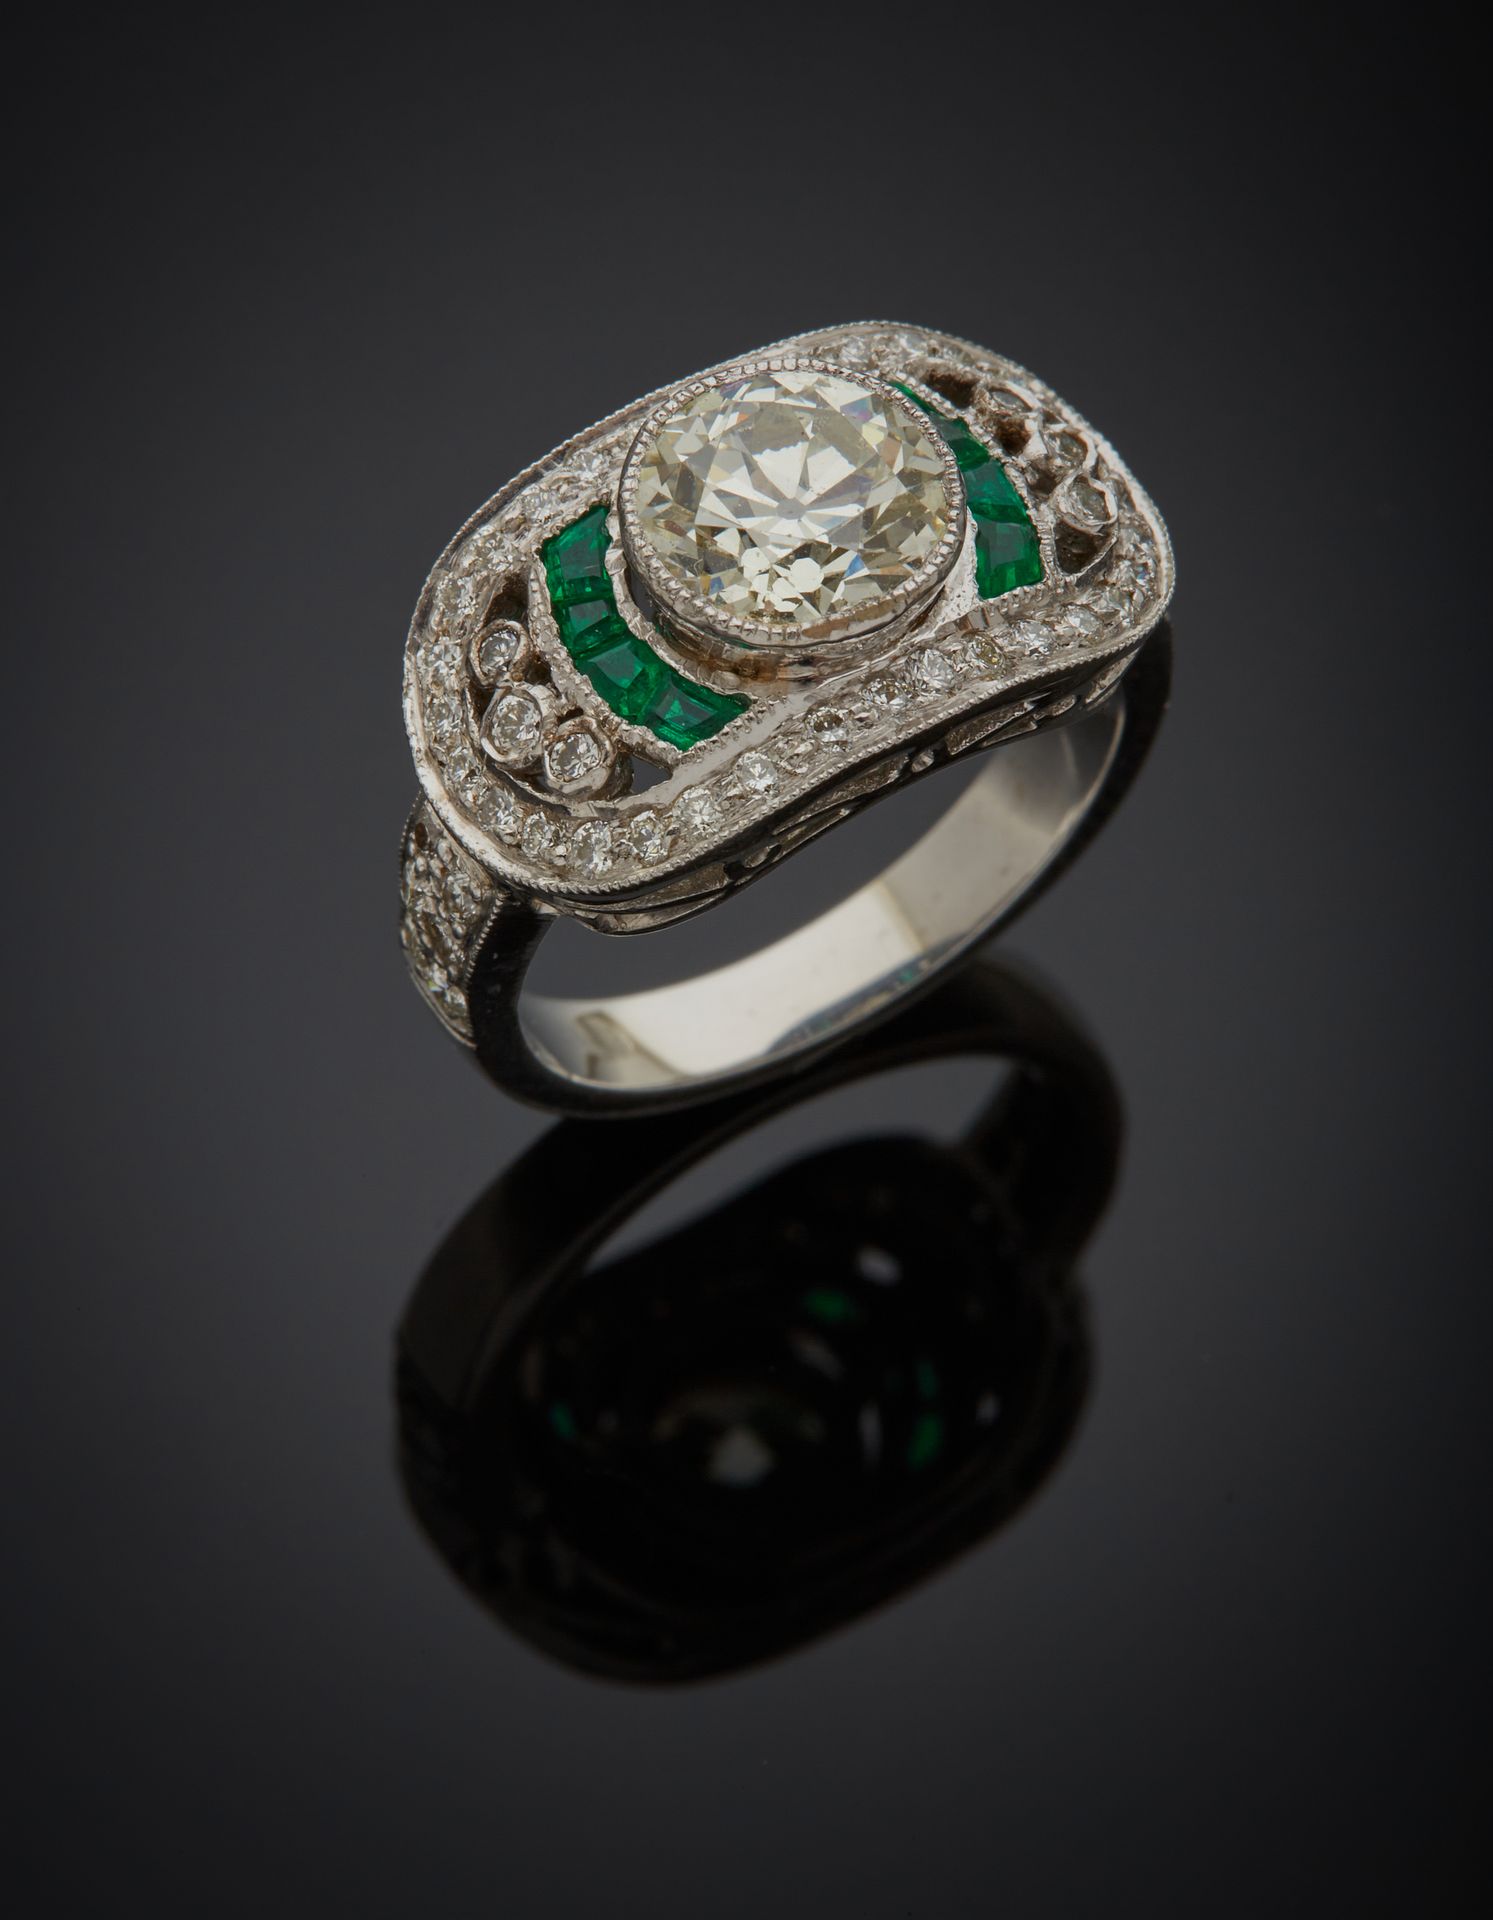 Null 大型镂空白金（750‰）戒指，镶嵌一颗老式切割钻石，重约1.7克拉，周围有明亮式切割钻石，肩部有校准的祖母绿。
指头：54。总重量：8.5克。